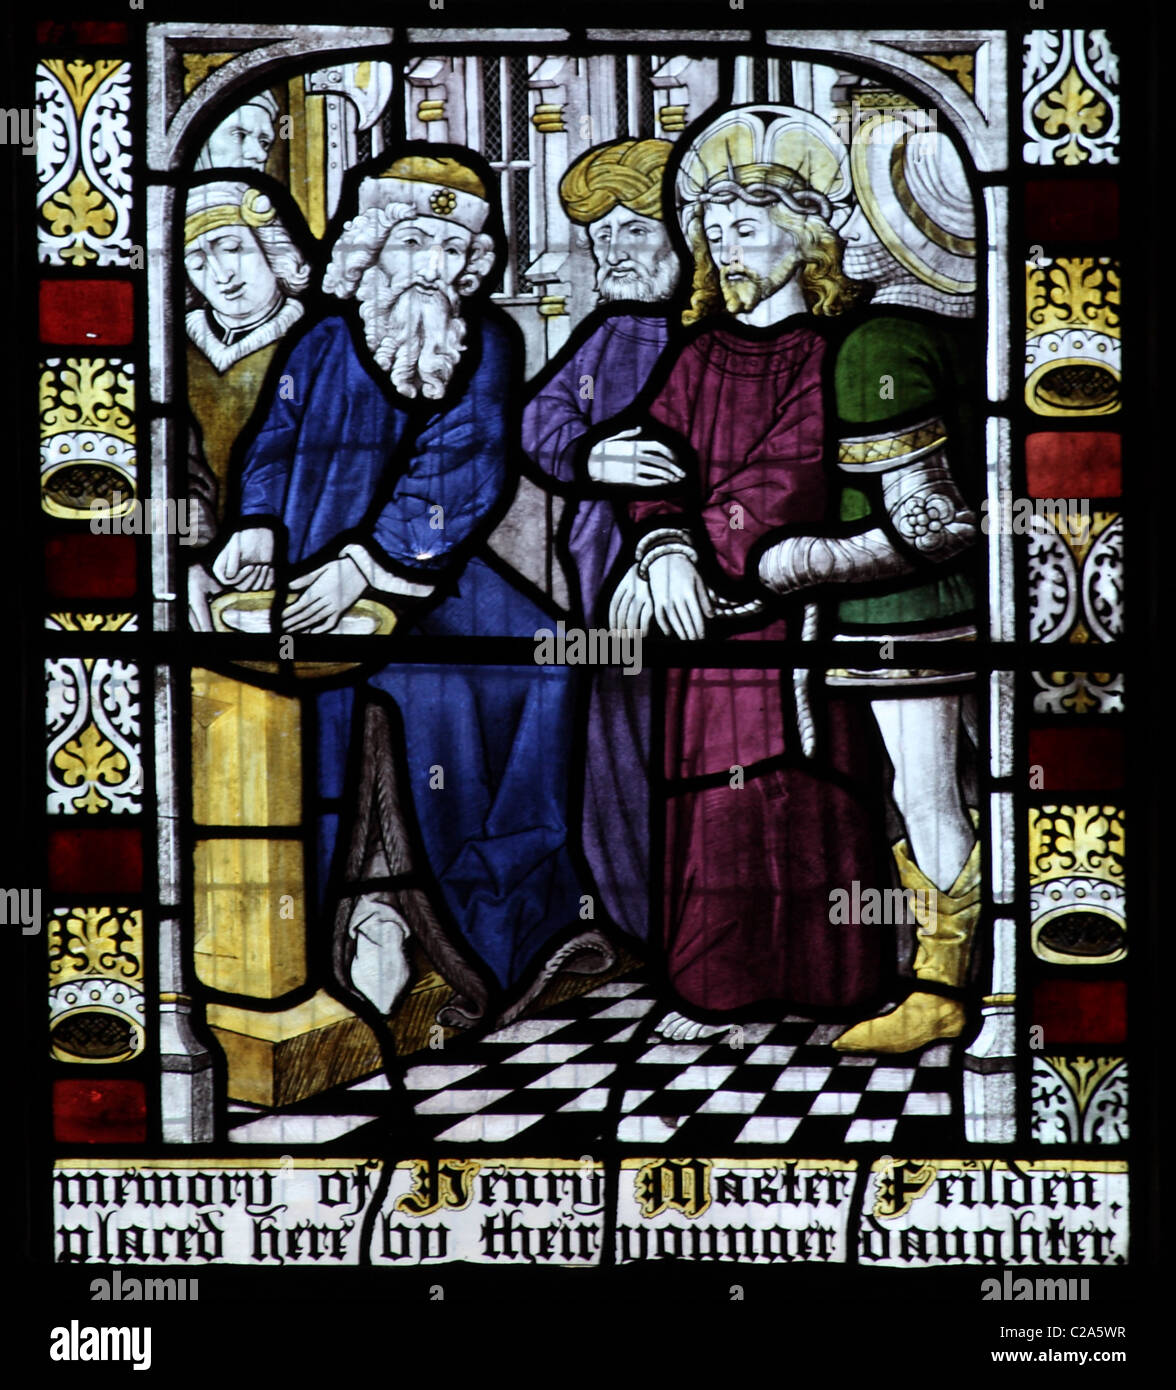 Un vitrail par Burlison et Grylls décrivant le procès de Jésus par Ponce Pilate Banque D'Images